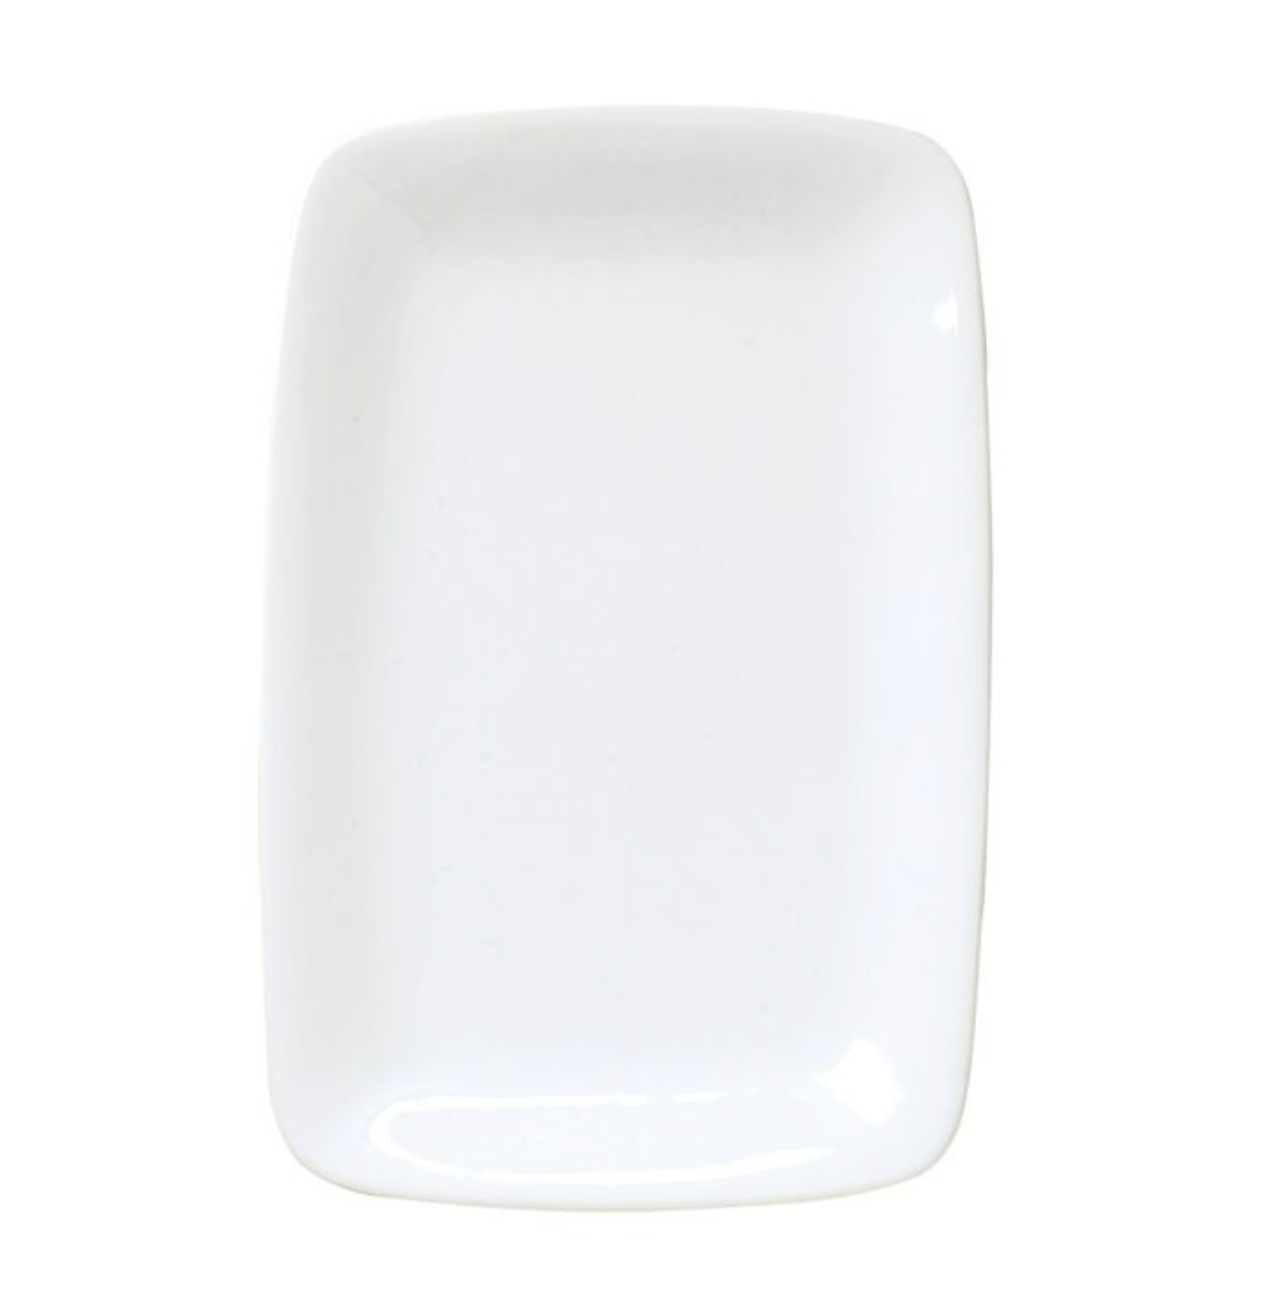 Porcelain Rectangular Platter – White – 10.25